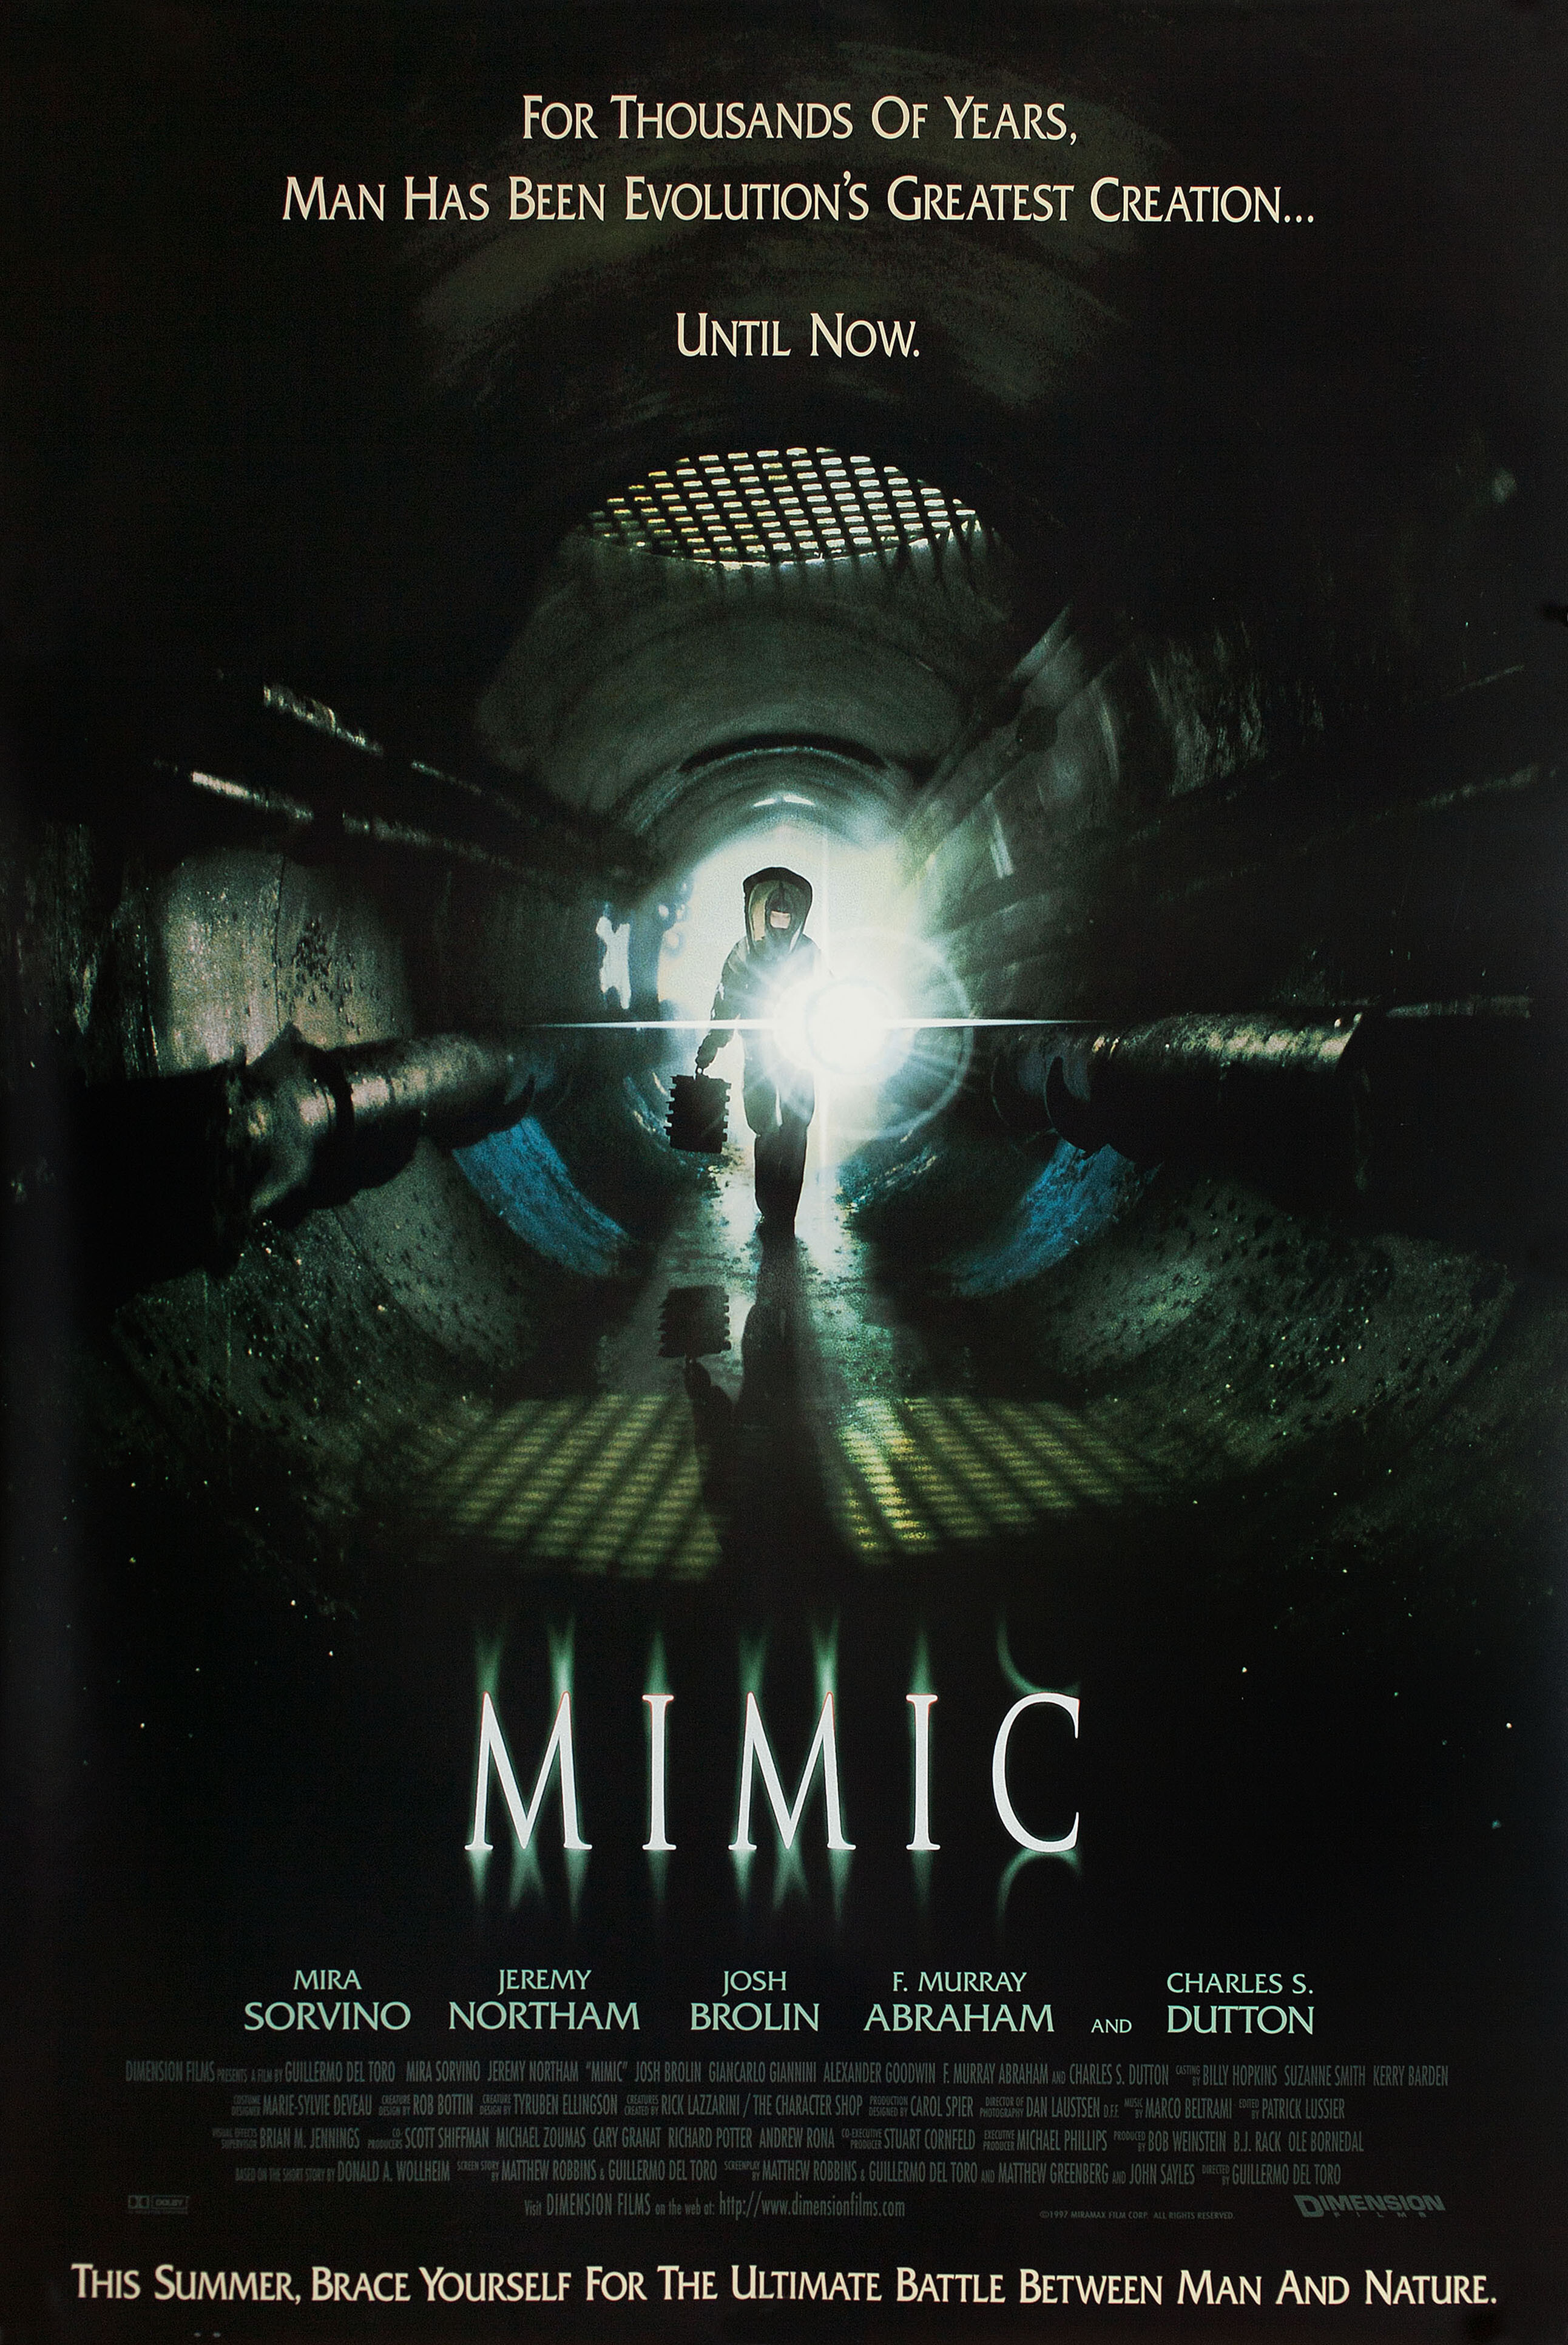 Мутанты (Mimic, 1997), режиссёр Гильермо дель Торо, американский постер к фильму (ужасы, 1997 год)